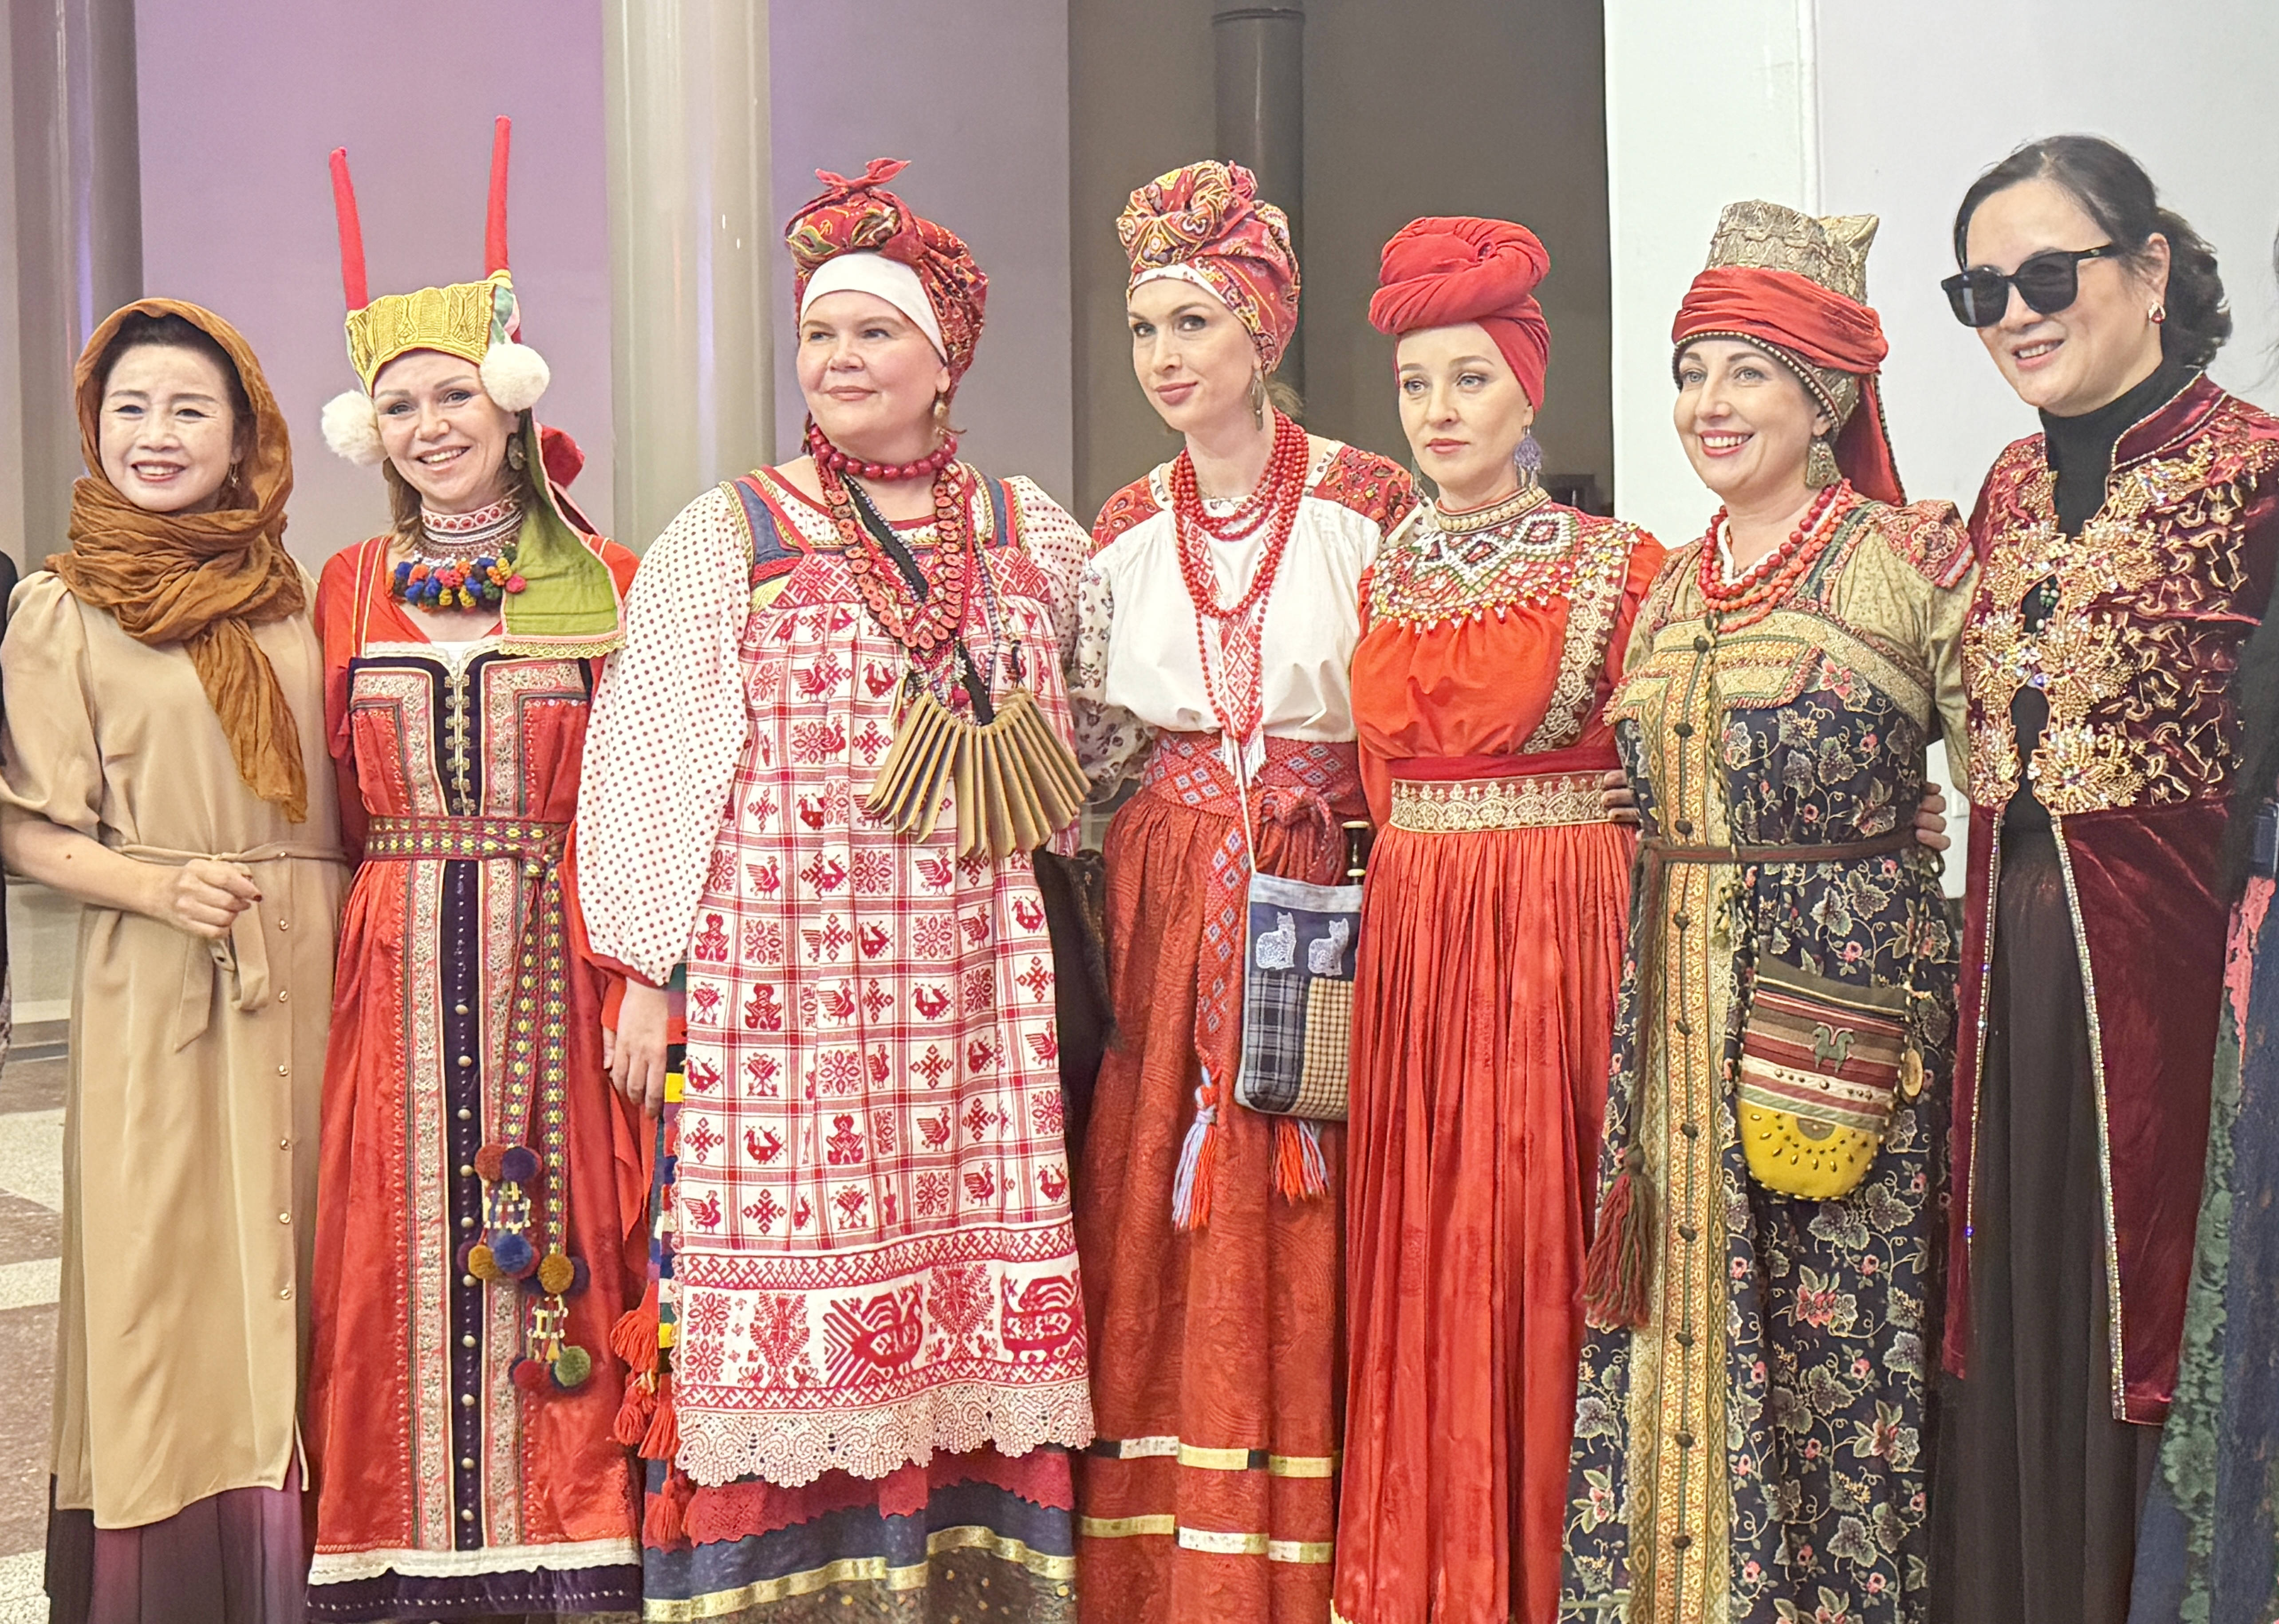 送冬去,迎春来!俄罗斯传统节日送冬节文化交流活动在北京举行